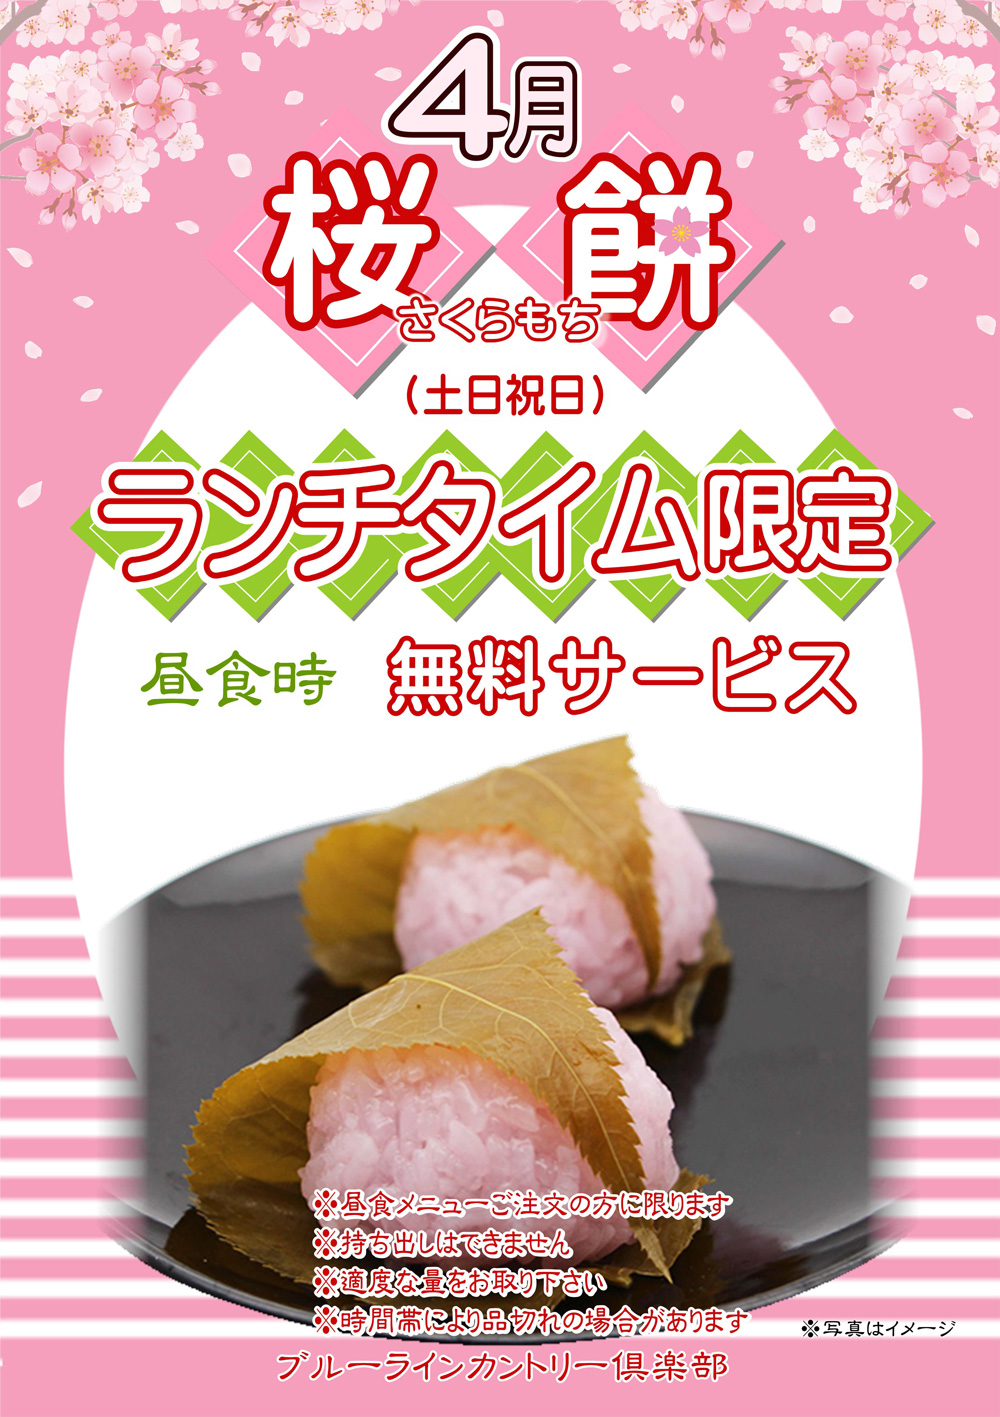 【4月休日限定】桜餅無料サービスのご案内